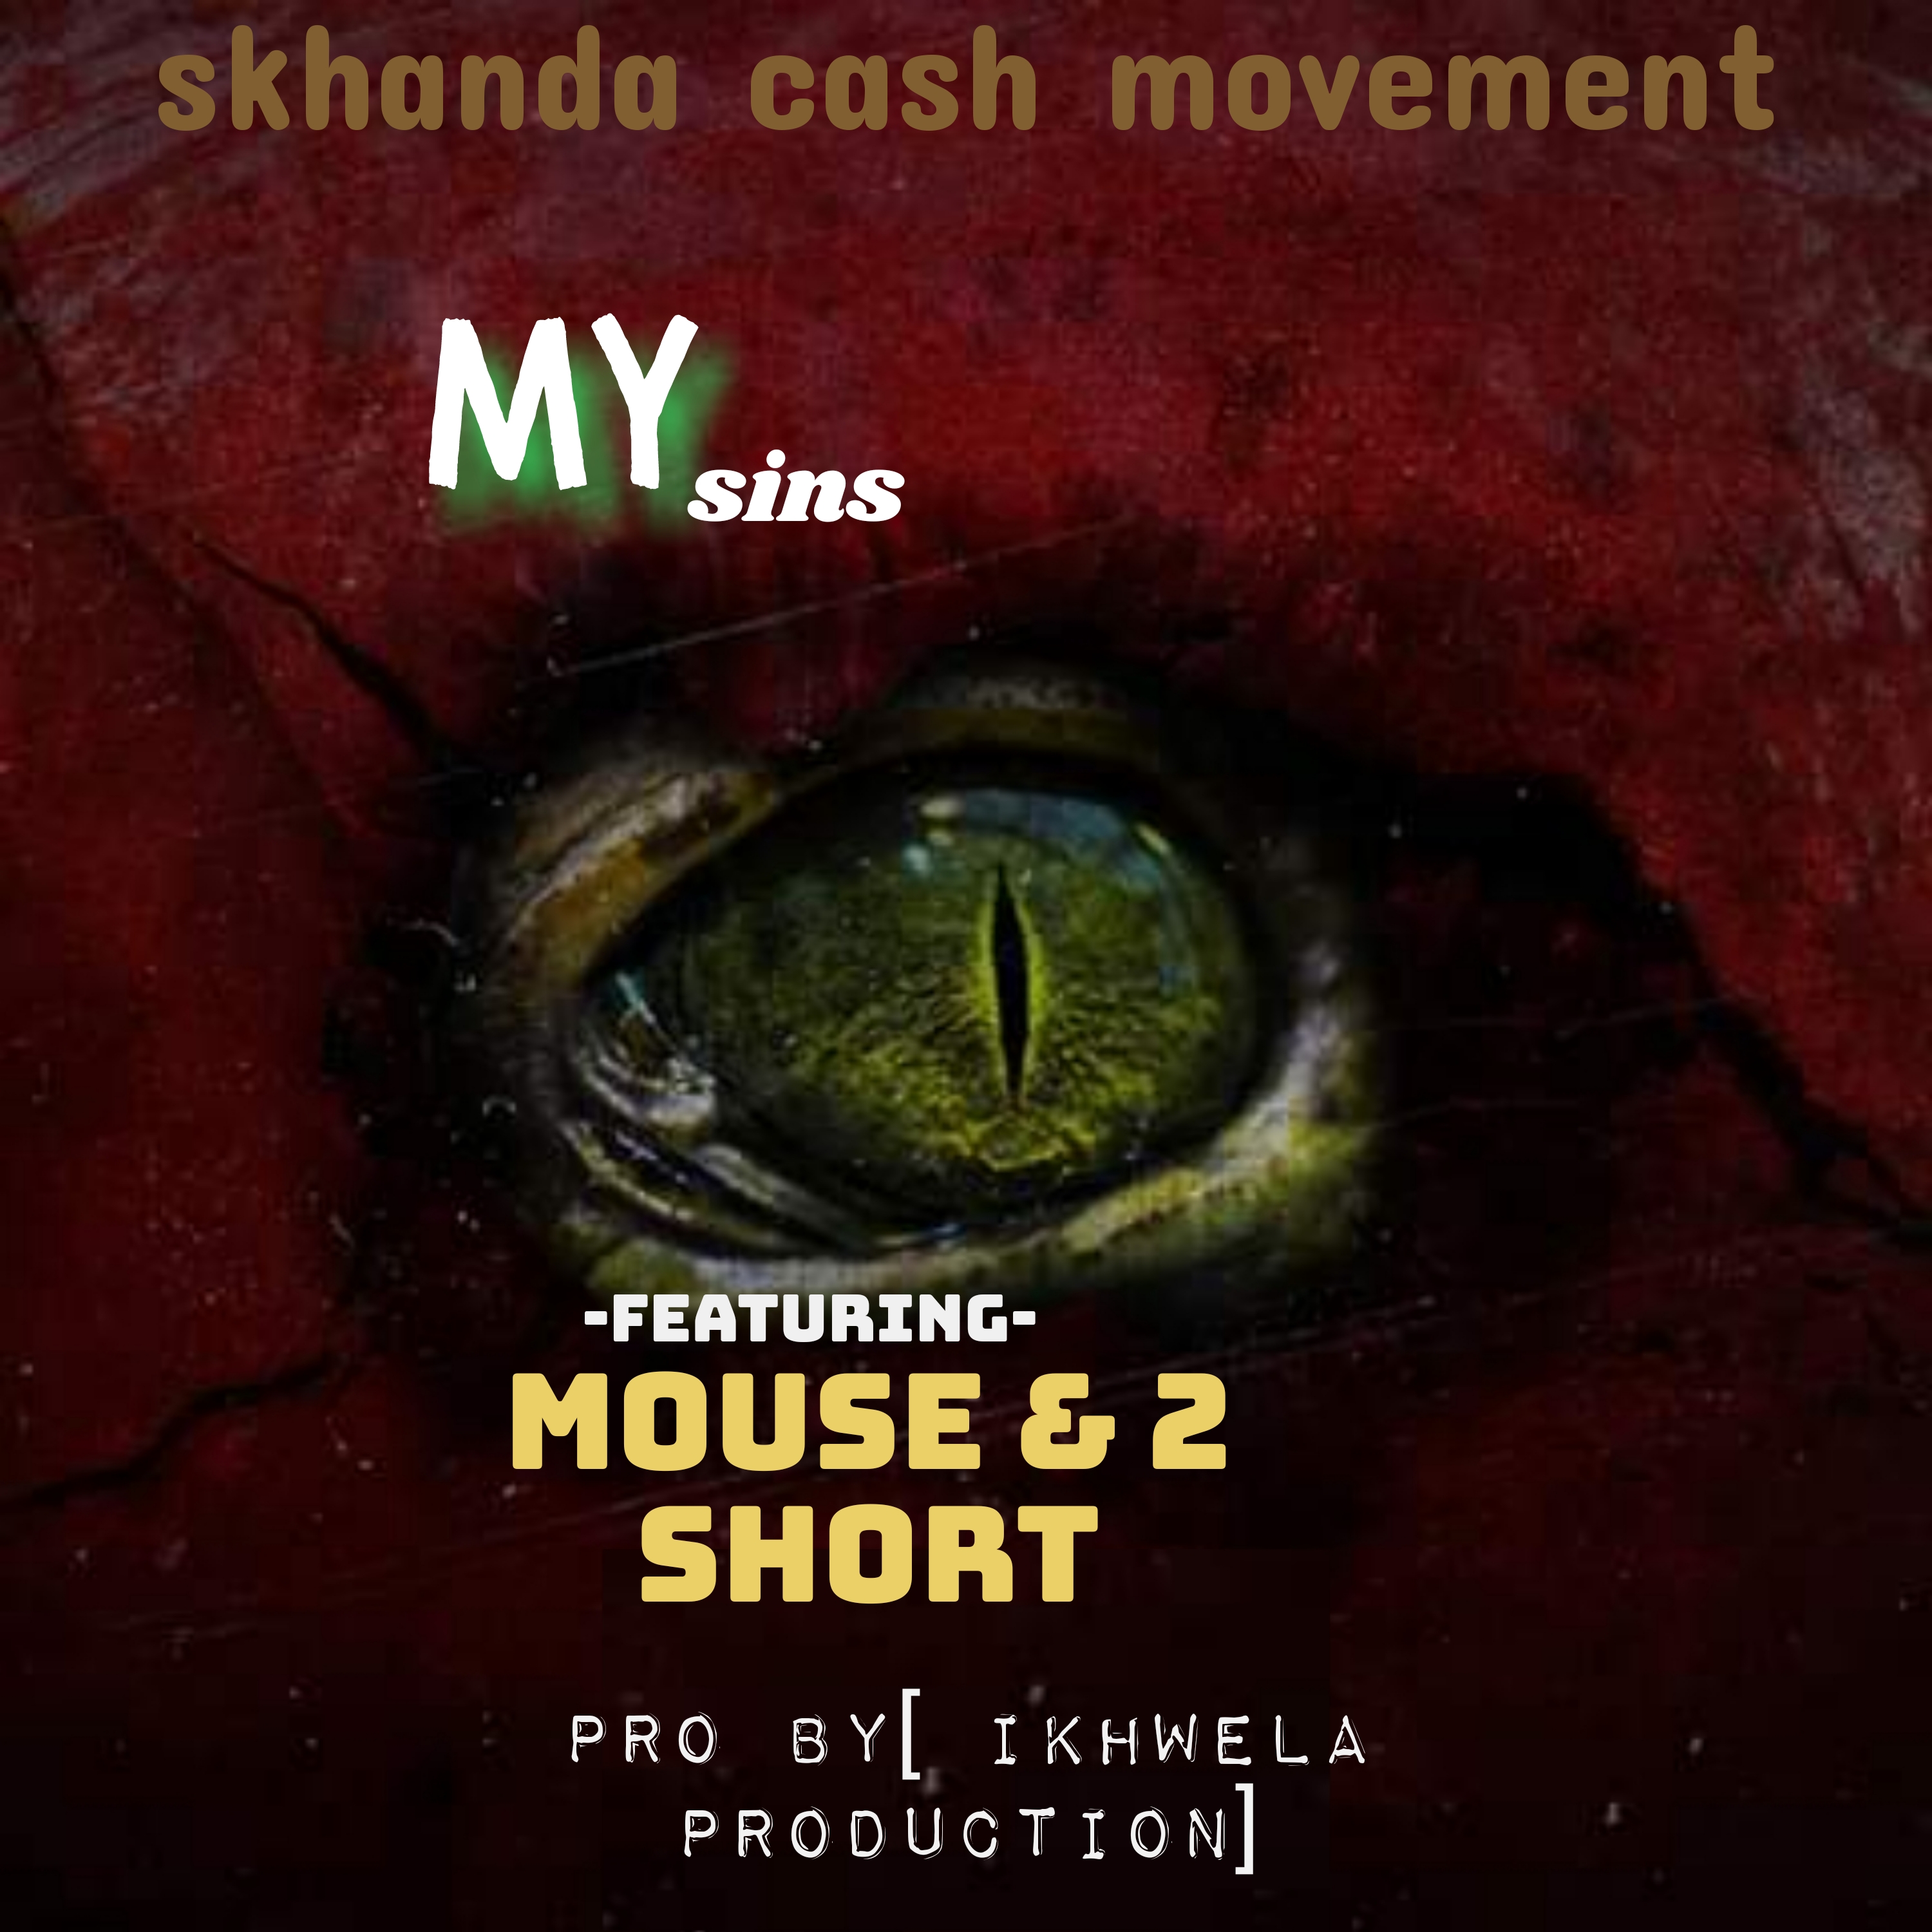 My sins ft[ mouse & 2 short] - Skhanda cash movement